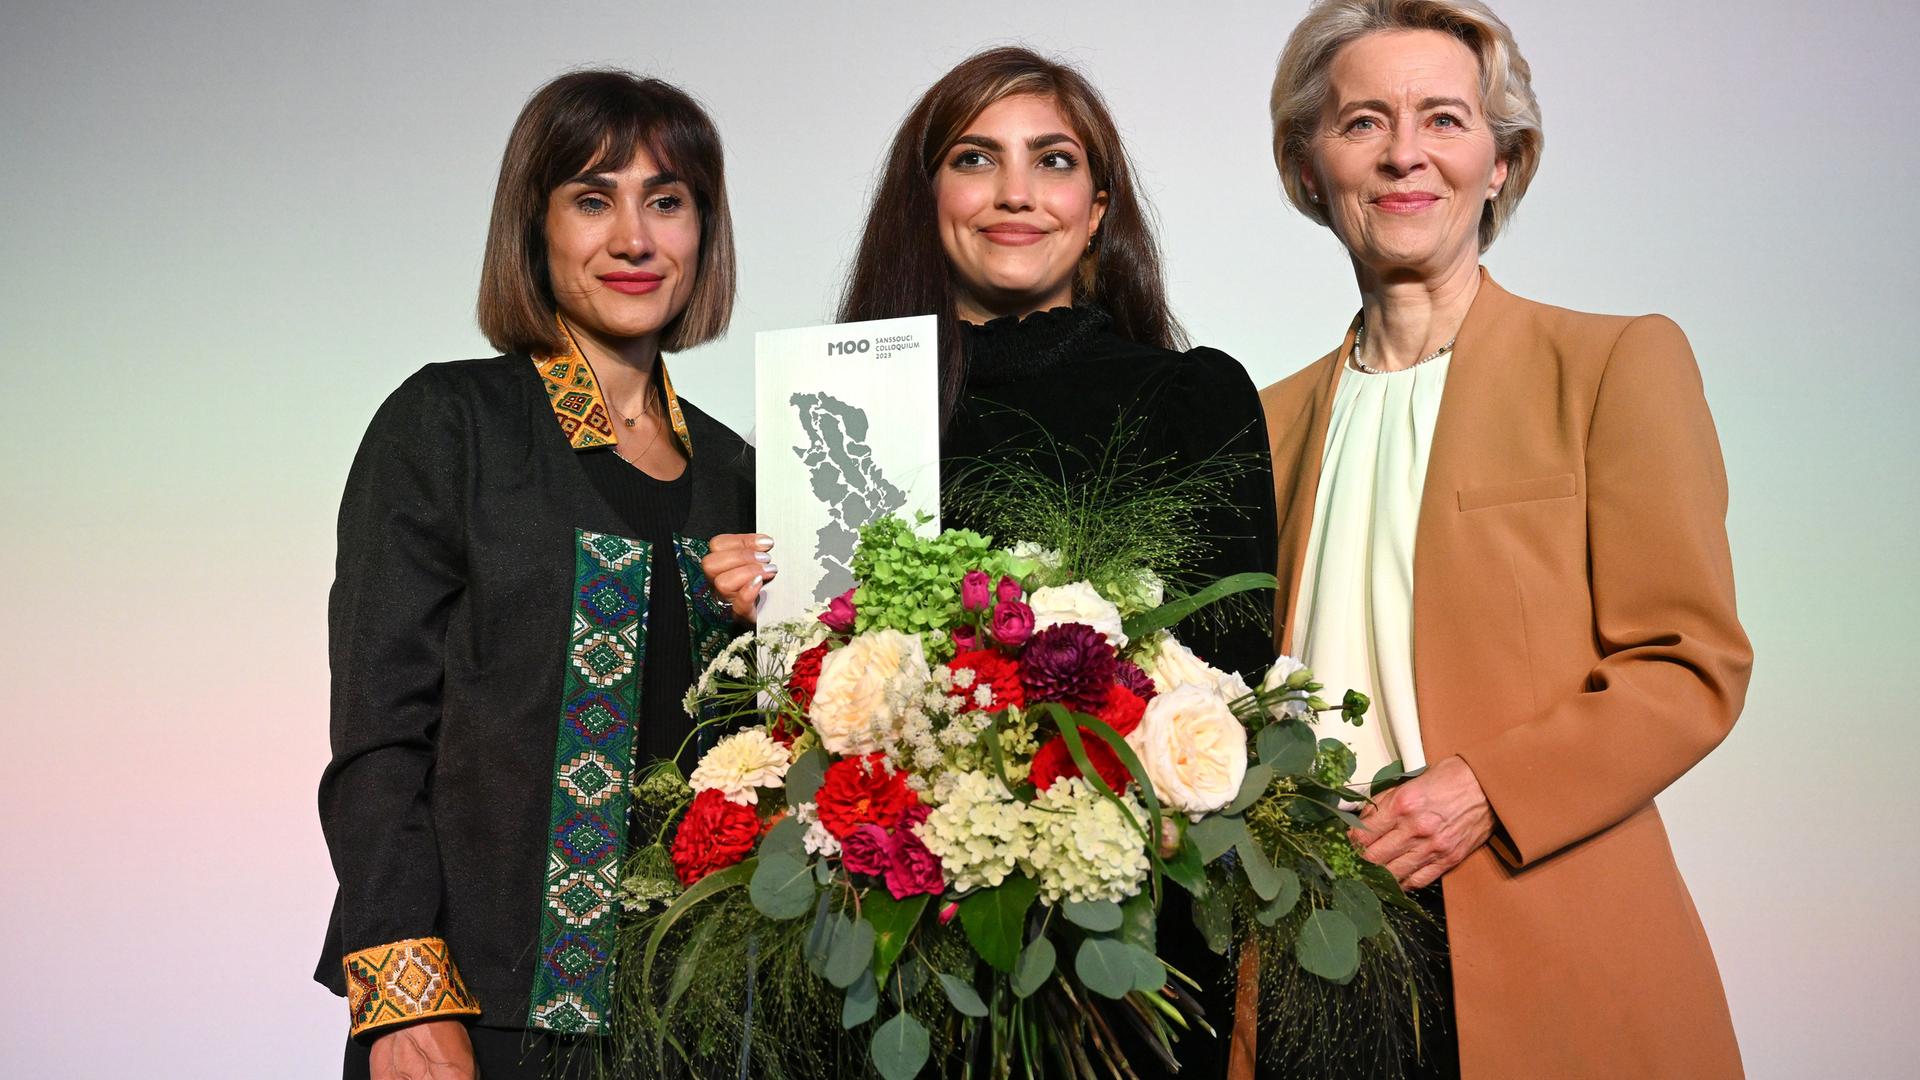 Die iranischen Aktivistinnen Mersedeh Shahinkar, iranische Aktivistin, und Shima Babaei mit der Präsidentin der EU-Kommission, Ursula von der Leyen, bei der Verleihung des M100 Media Awards in Potsdam. 